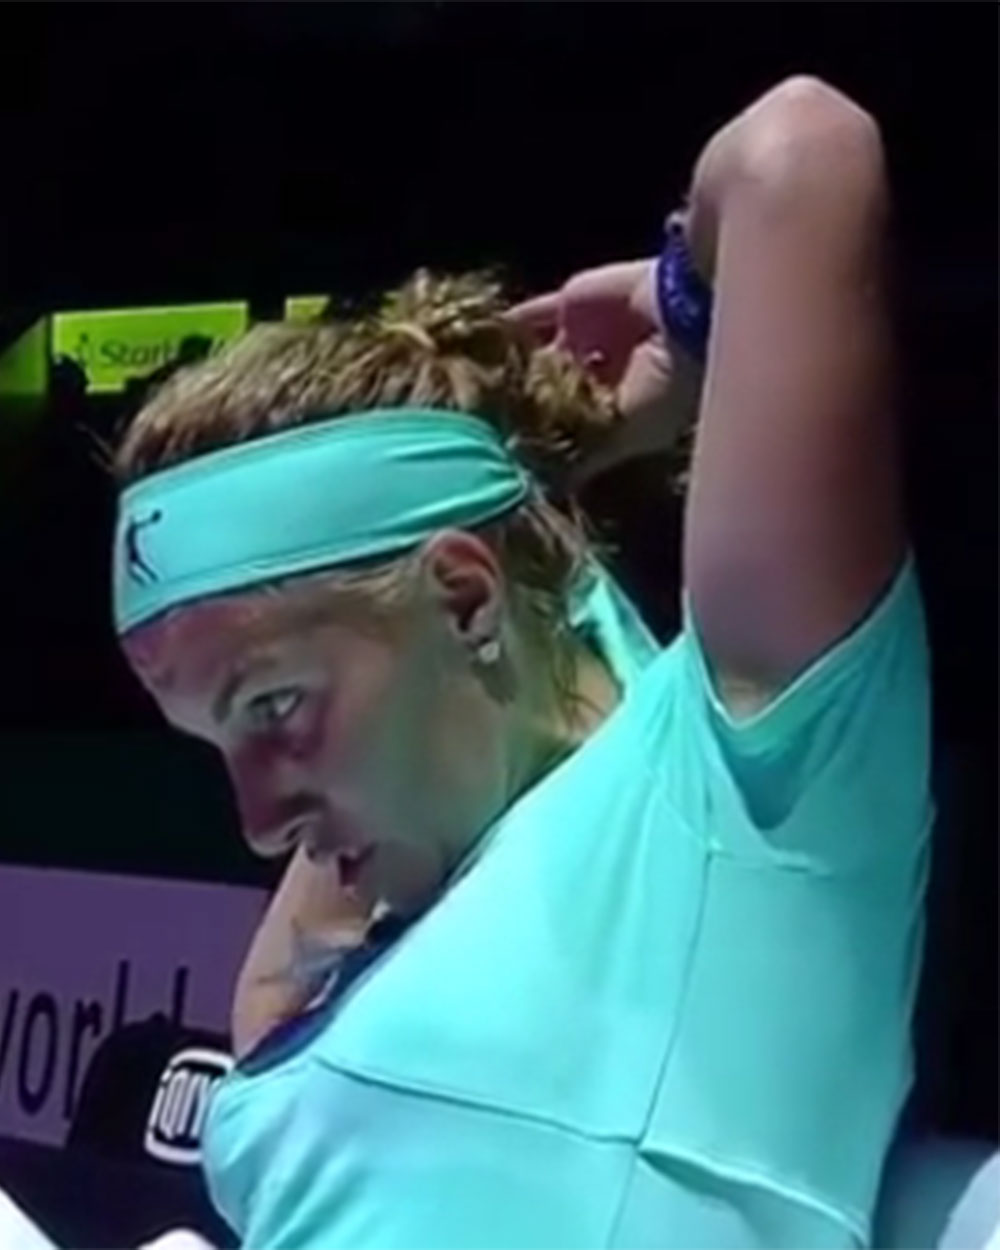 Sventlana Kuznetsova gives self haircut during tennis match